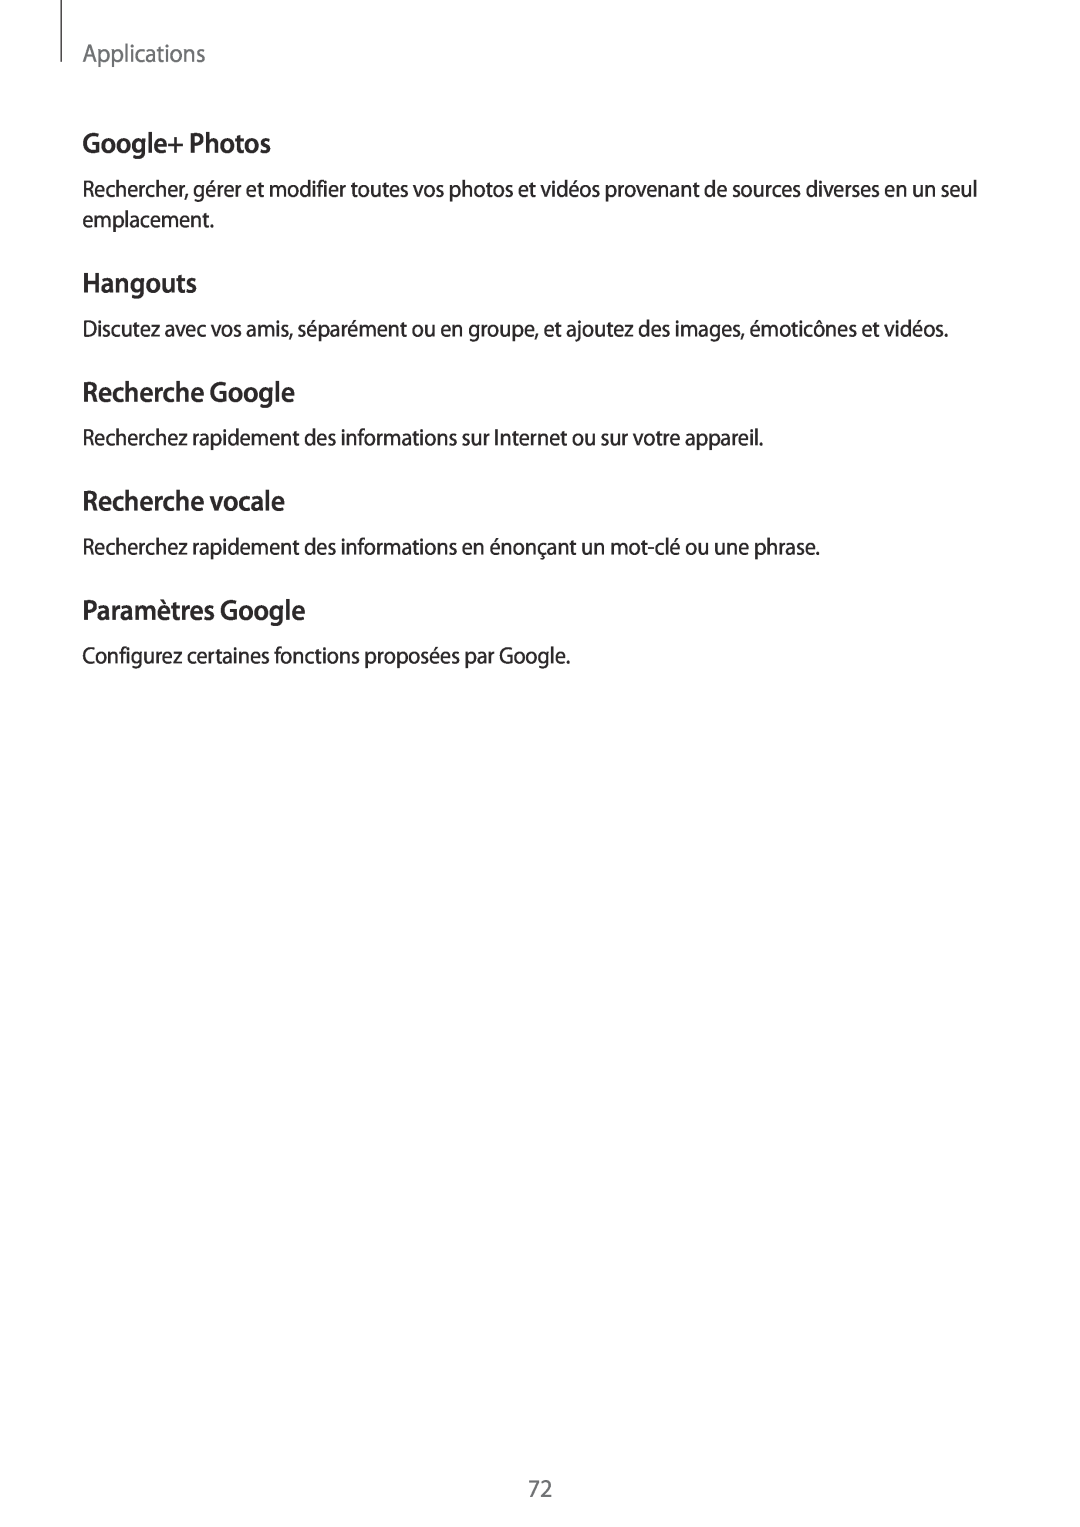 Samsung SM-T810NZDEXEF manual Google+ Photos, Hangouts, Recherche Google, Recherche vocale, Paramètres Google, Applications 